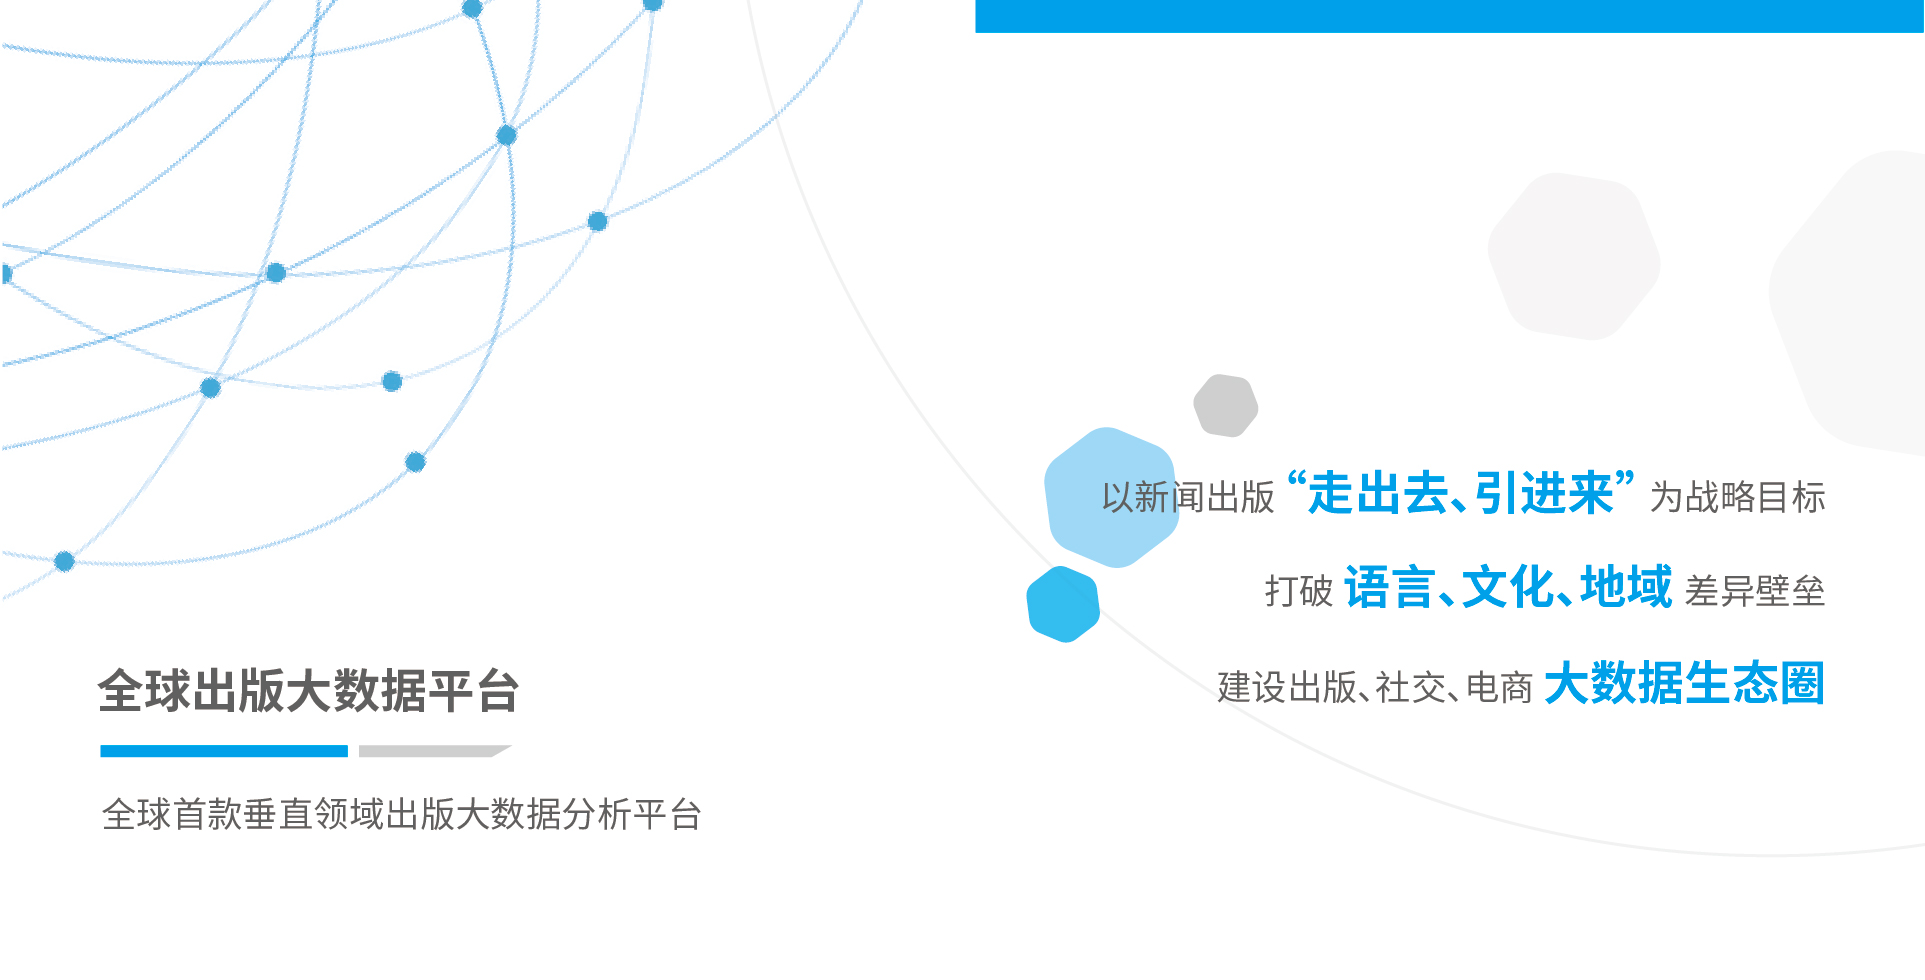 全球出版大数据 2017.V1.0 中文(1)_画板 2.jpg